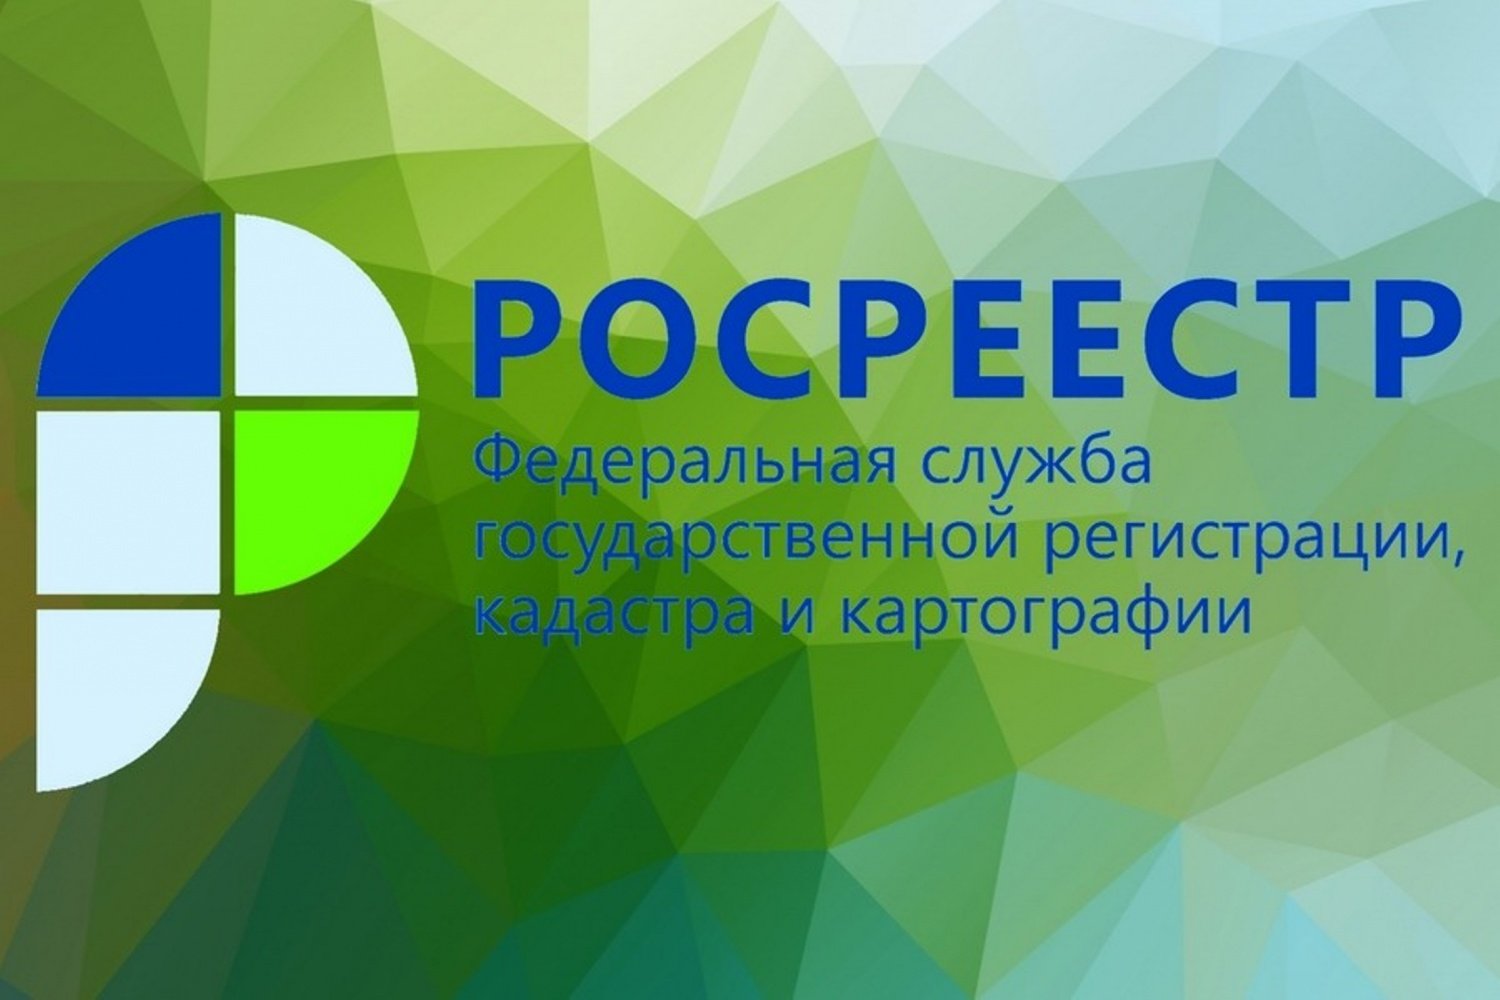 Управление Росреестра по Новгородской области проведет горячую линию по вопросам банкротства.